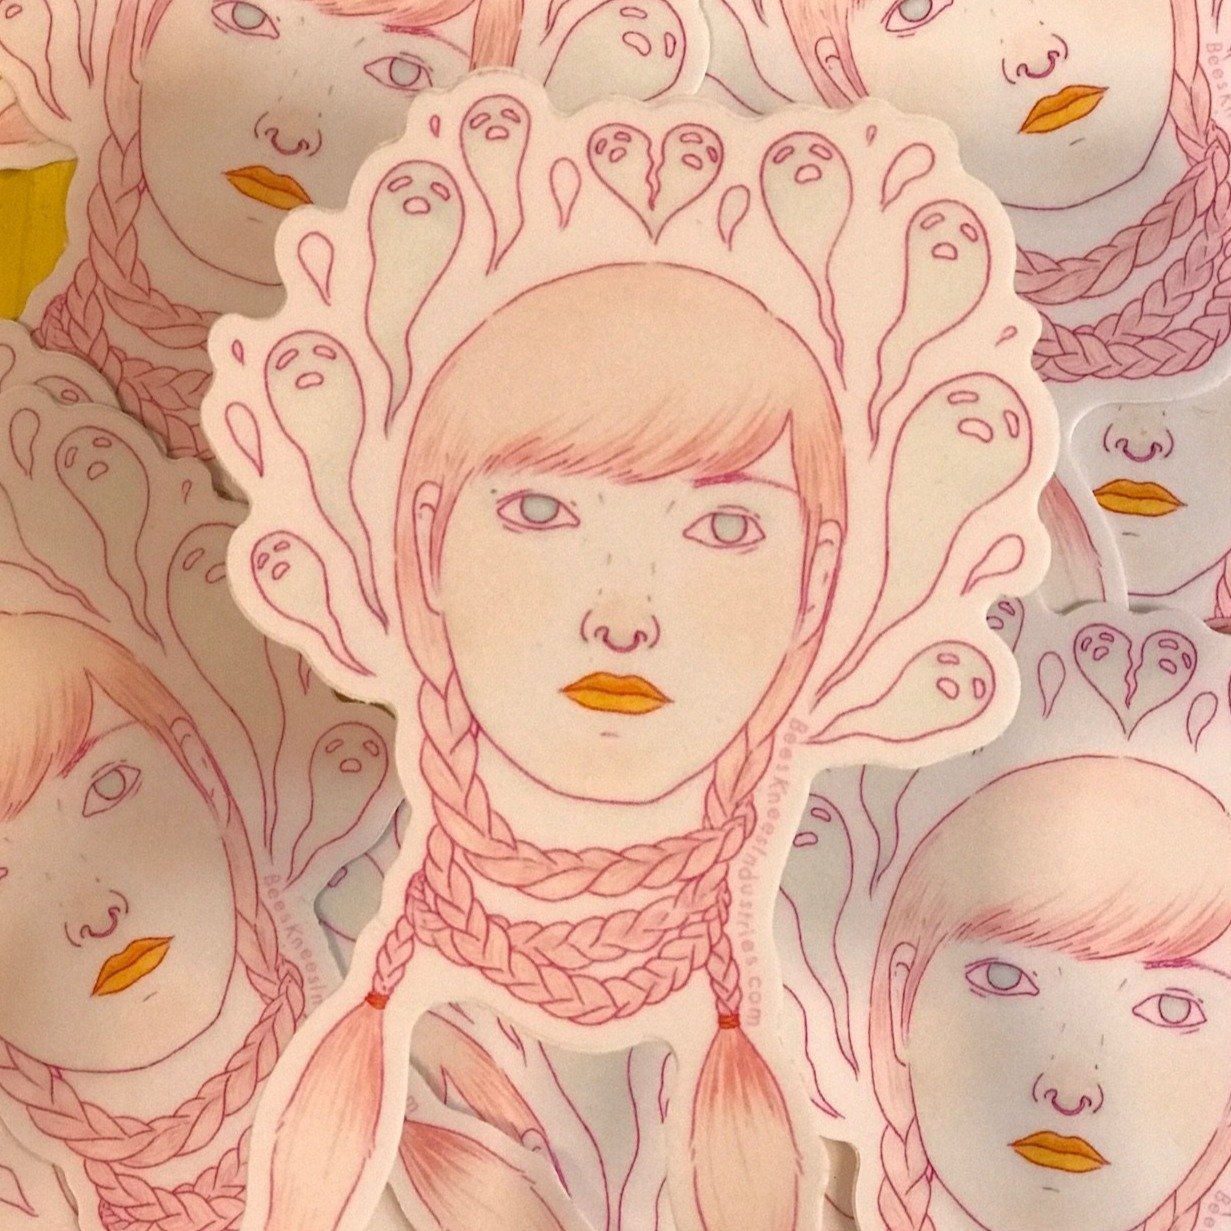 Die Cut Sticker – Pink Moth – Shannon Kirsten Studio